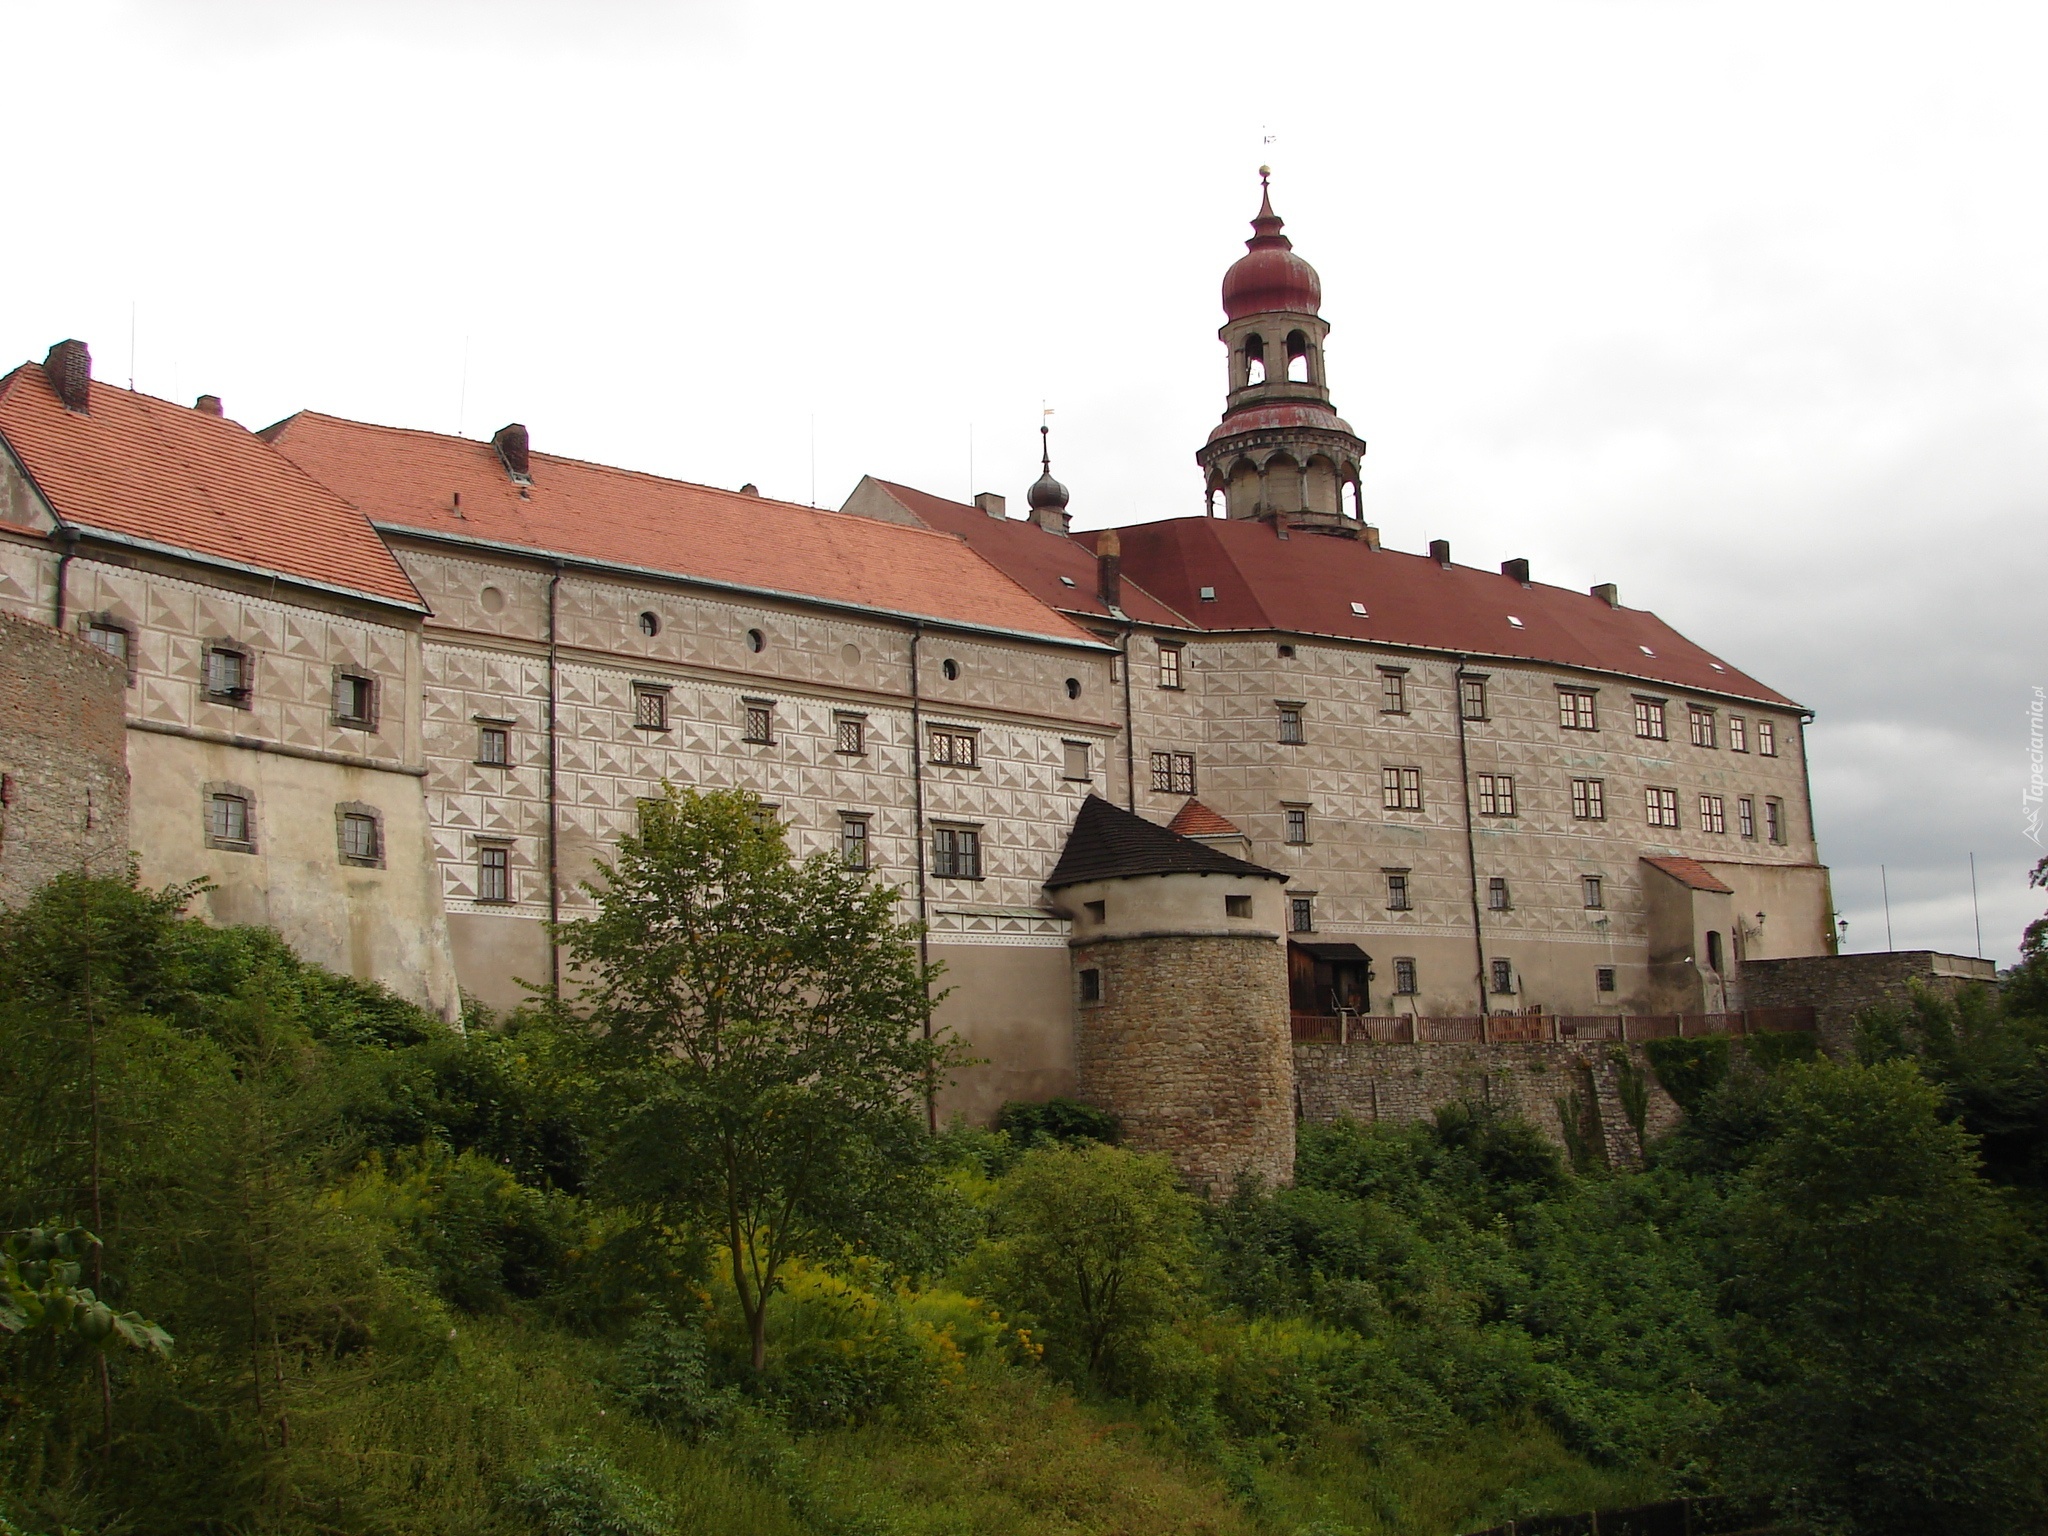 Zamek w Nachodzie, Zamek Náchod, Miejscowość Náchod, Czechy